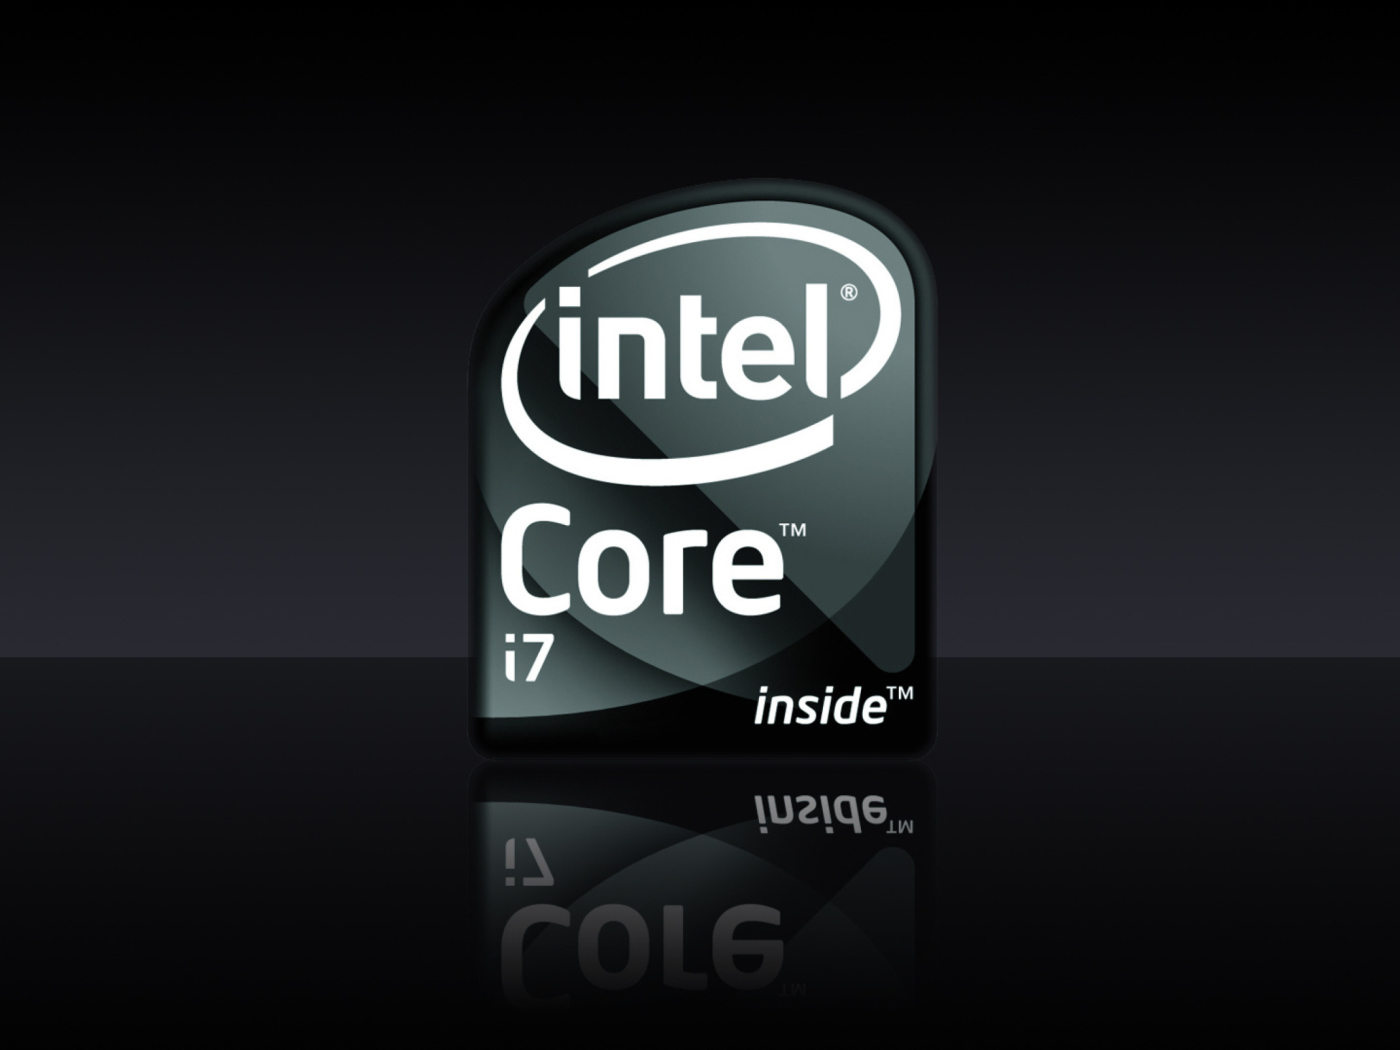 Intel Core I7 wallpaper 1400x1050